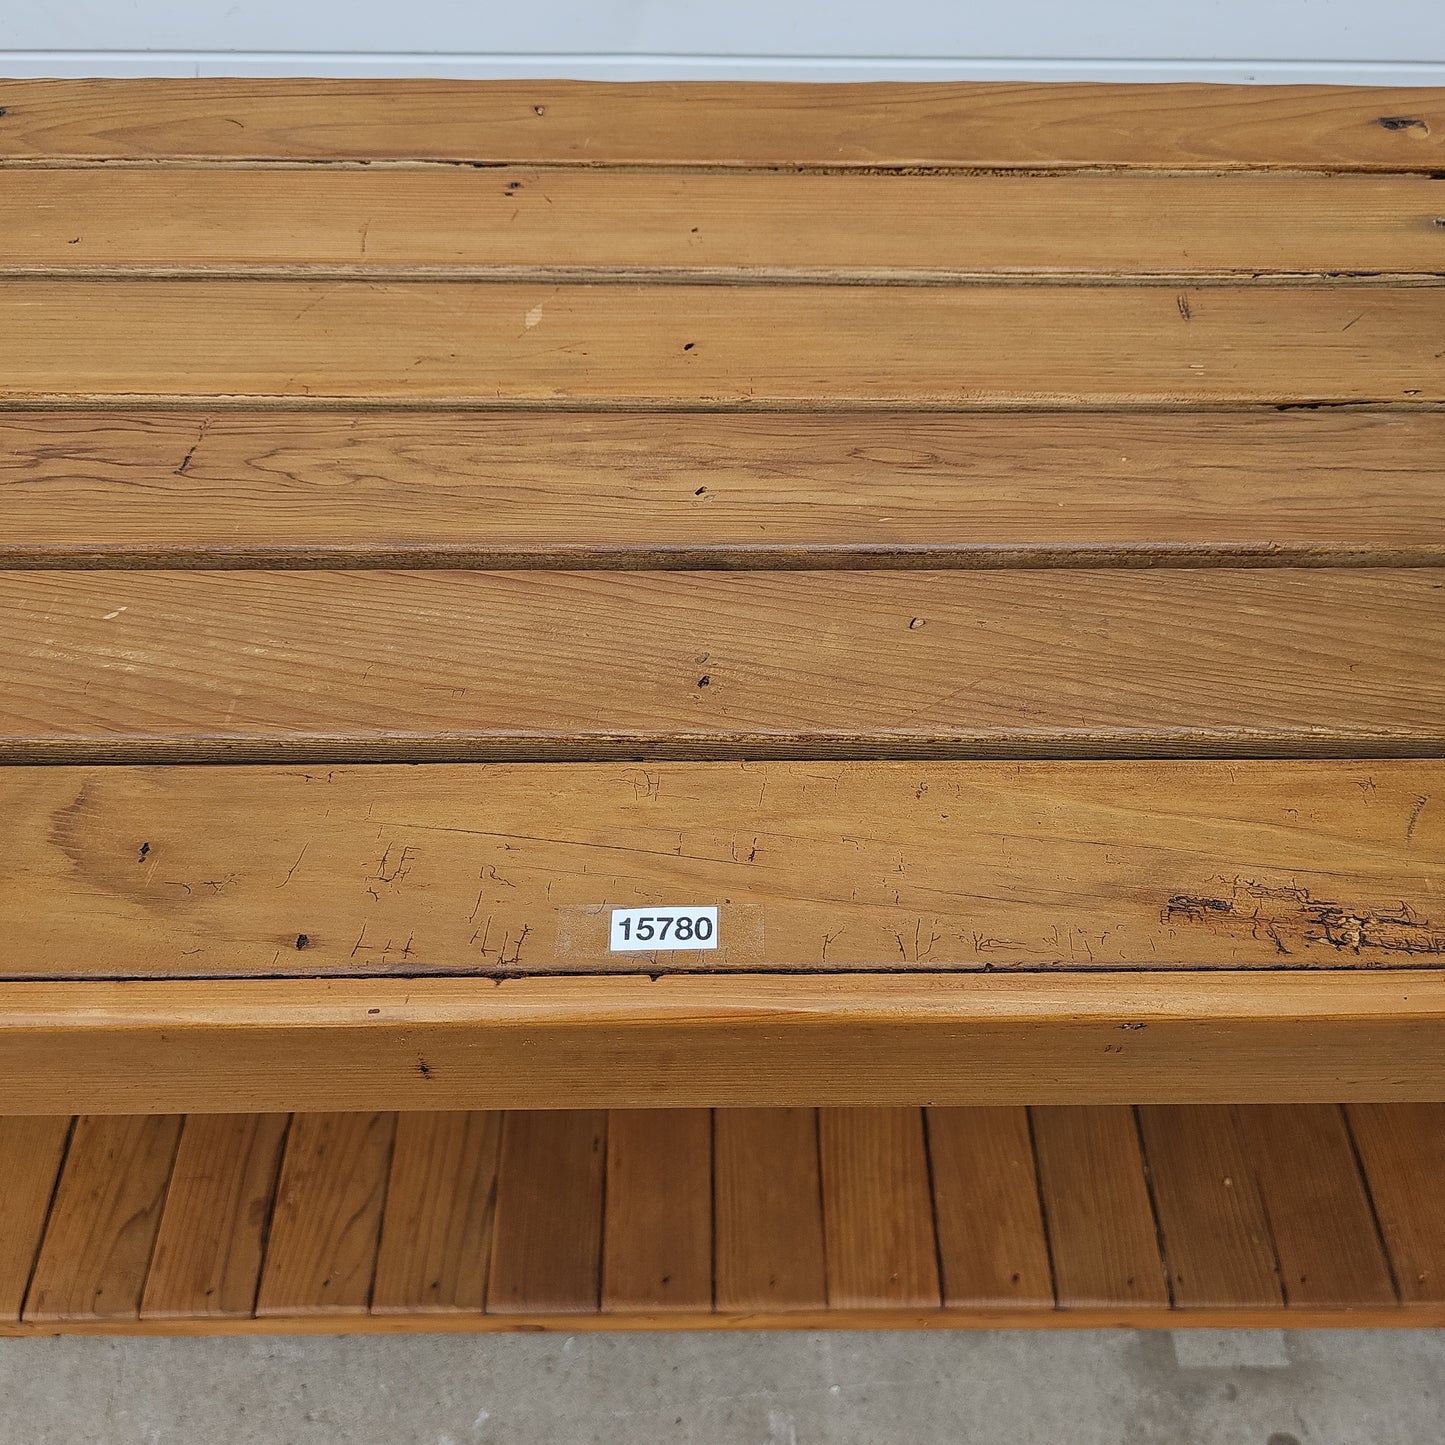 Industrial Slatted Wood Work Table